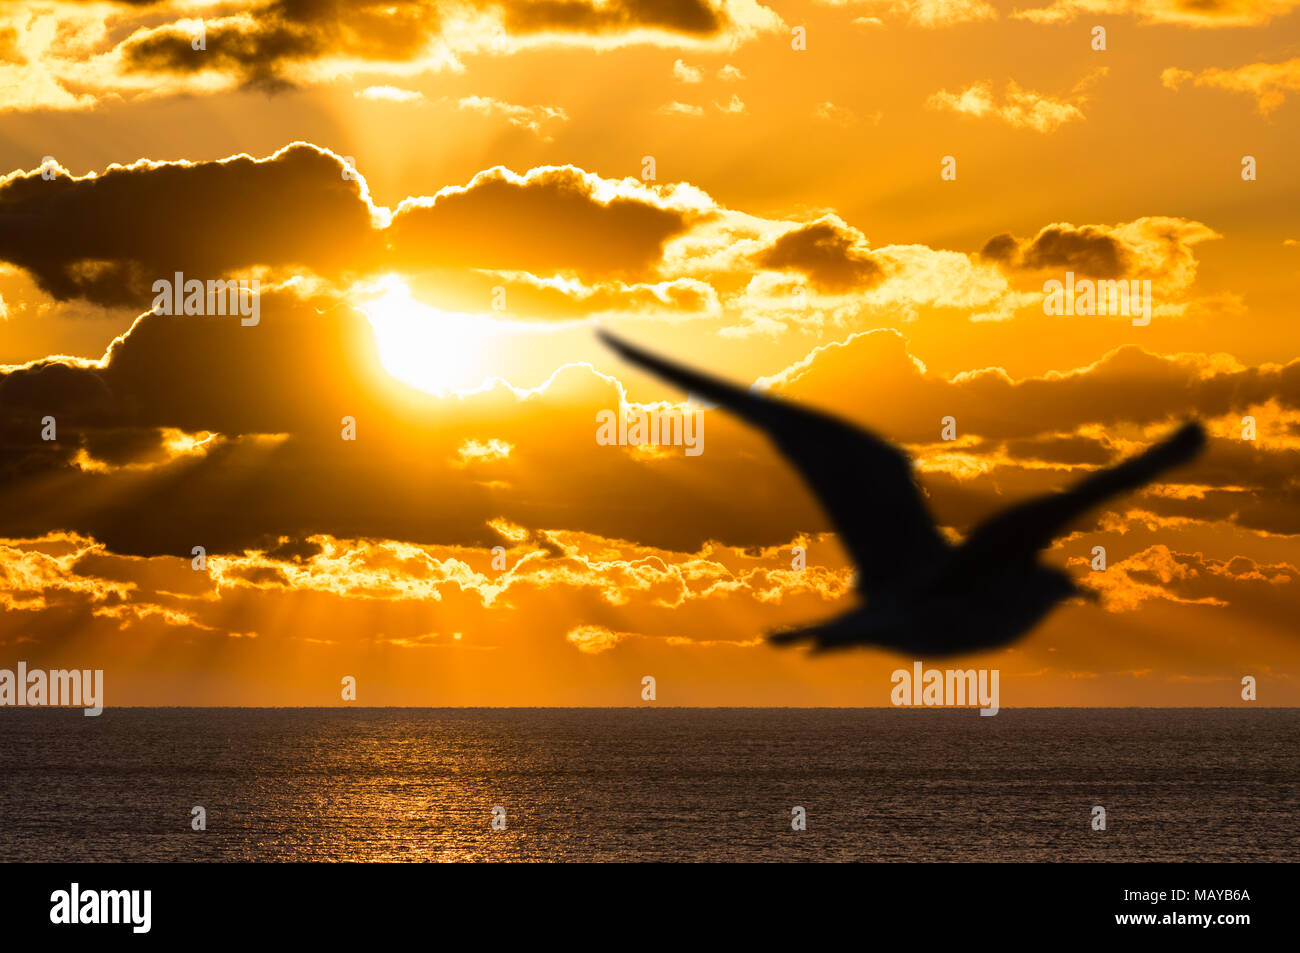 Silhouette d'une mouette voler au-dessus de la mer, comme un coucher de soleil spectaculaire prend place sur l'océan, avec des rayons de soleils bien visibles. Banque D'Images